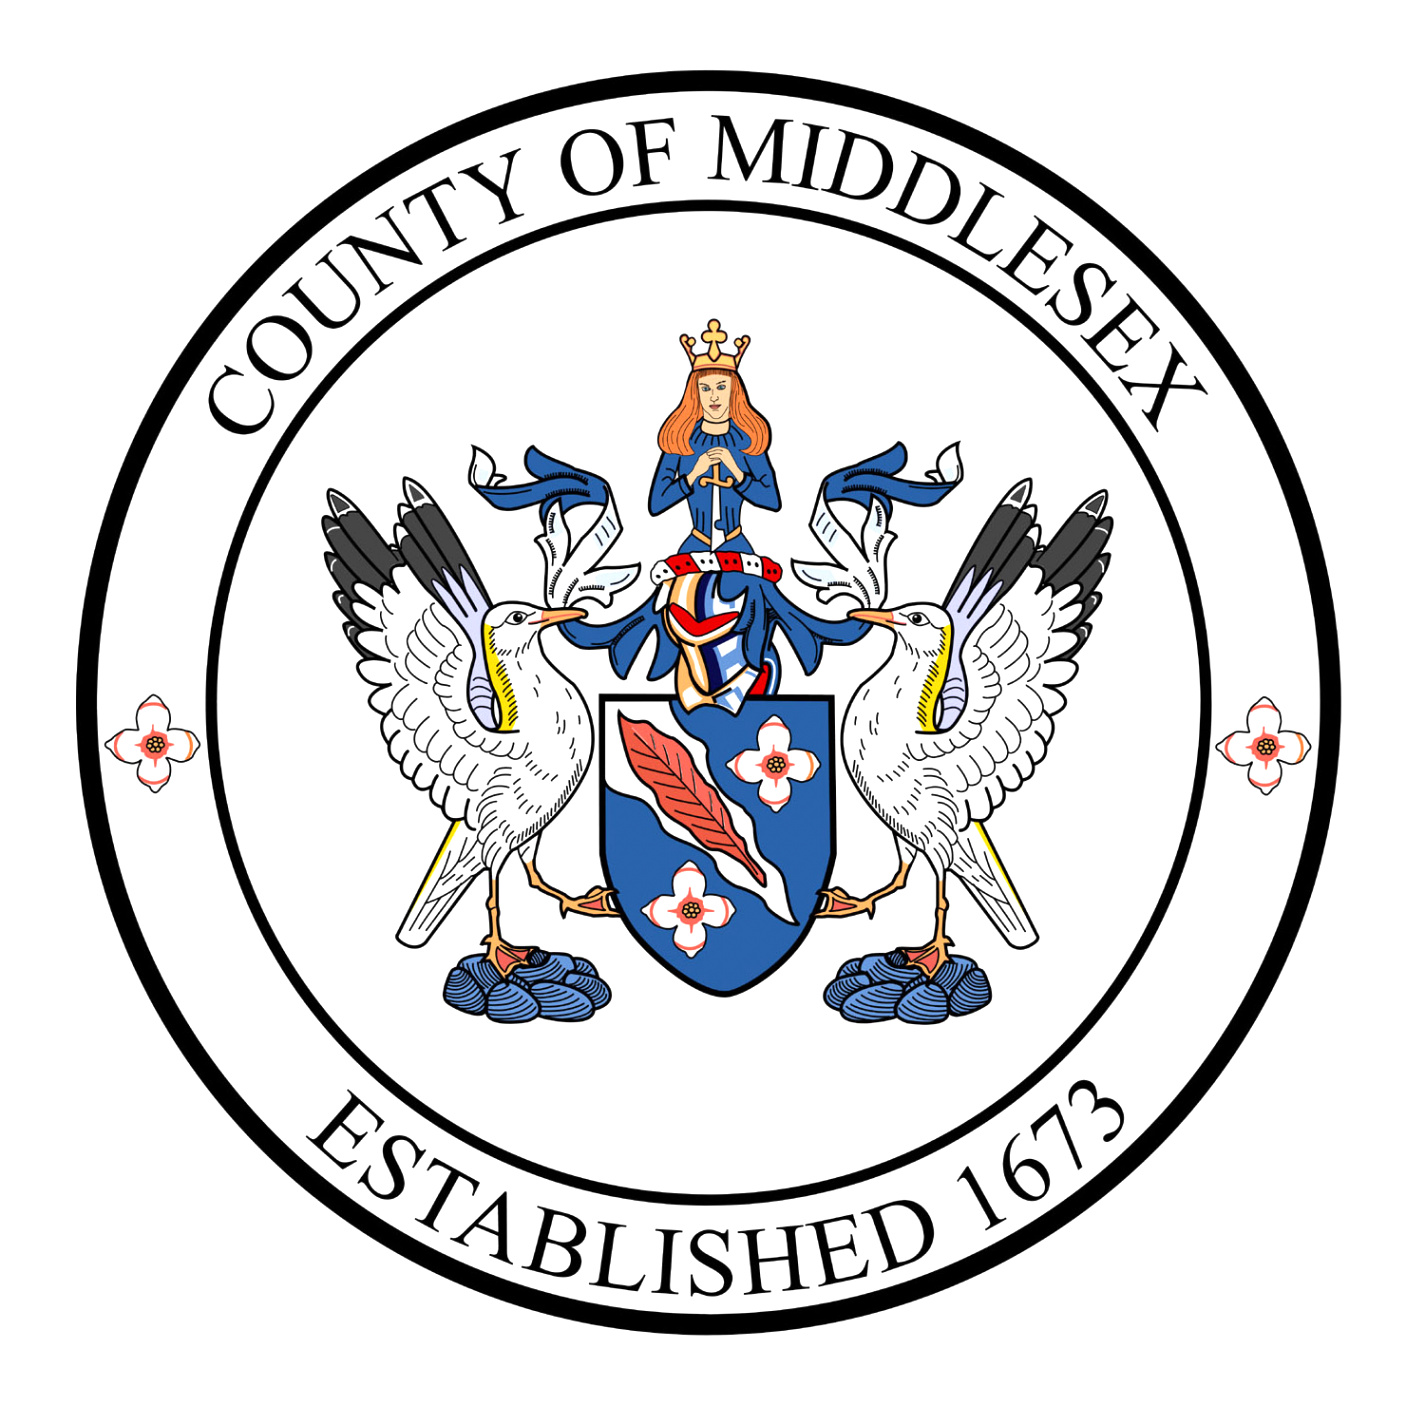 Vpn Services In Middlesex Va Dans Image Middle Va Familypedia